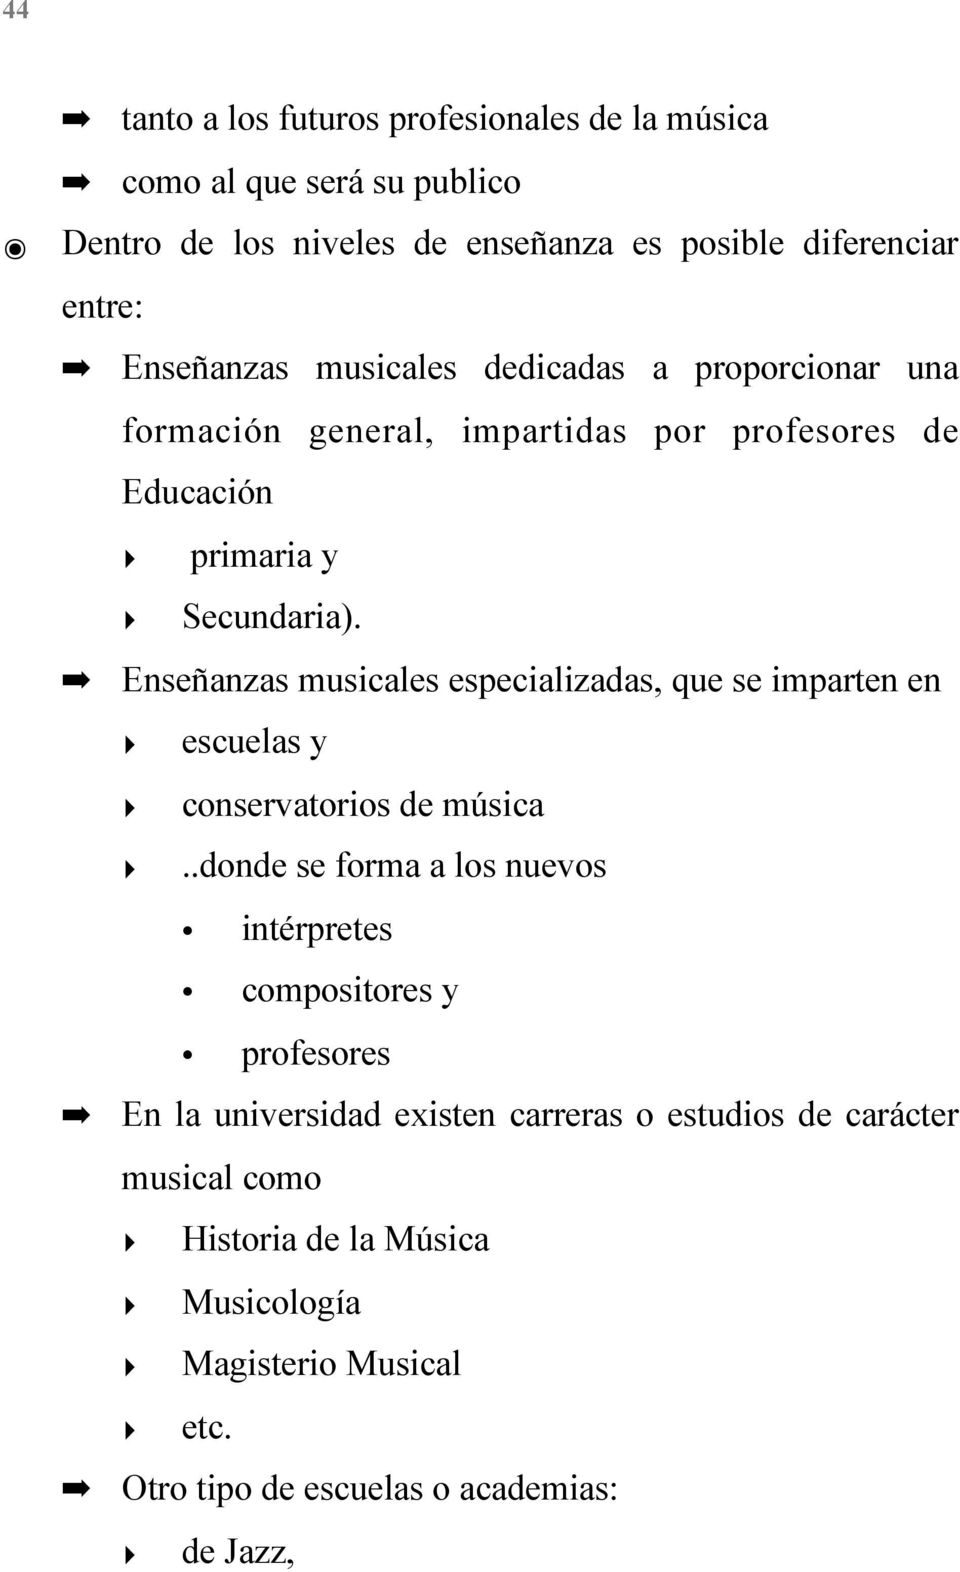 Enseñanzas musicales especializadas, que se imparten en escuelas y conservatorios de música.